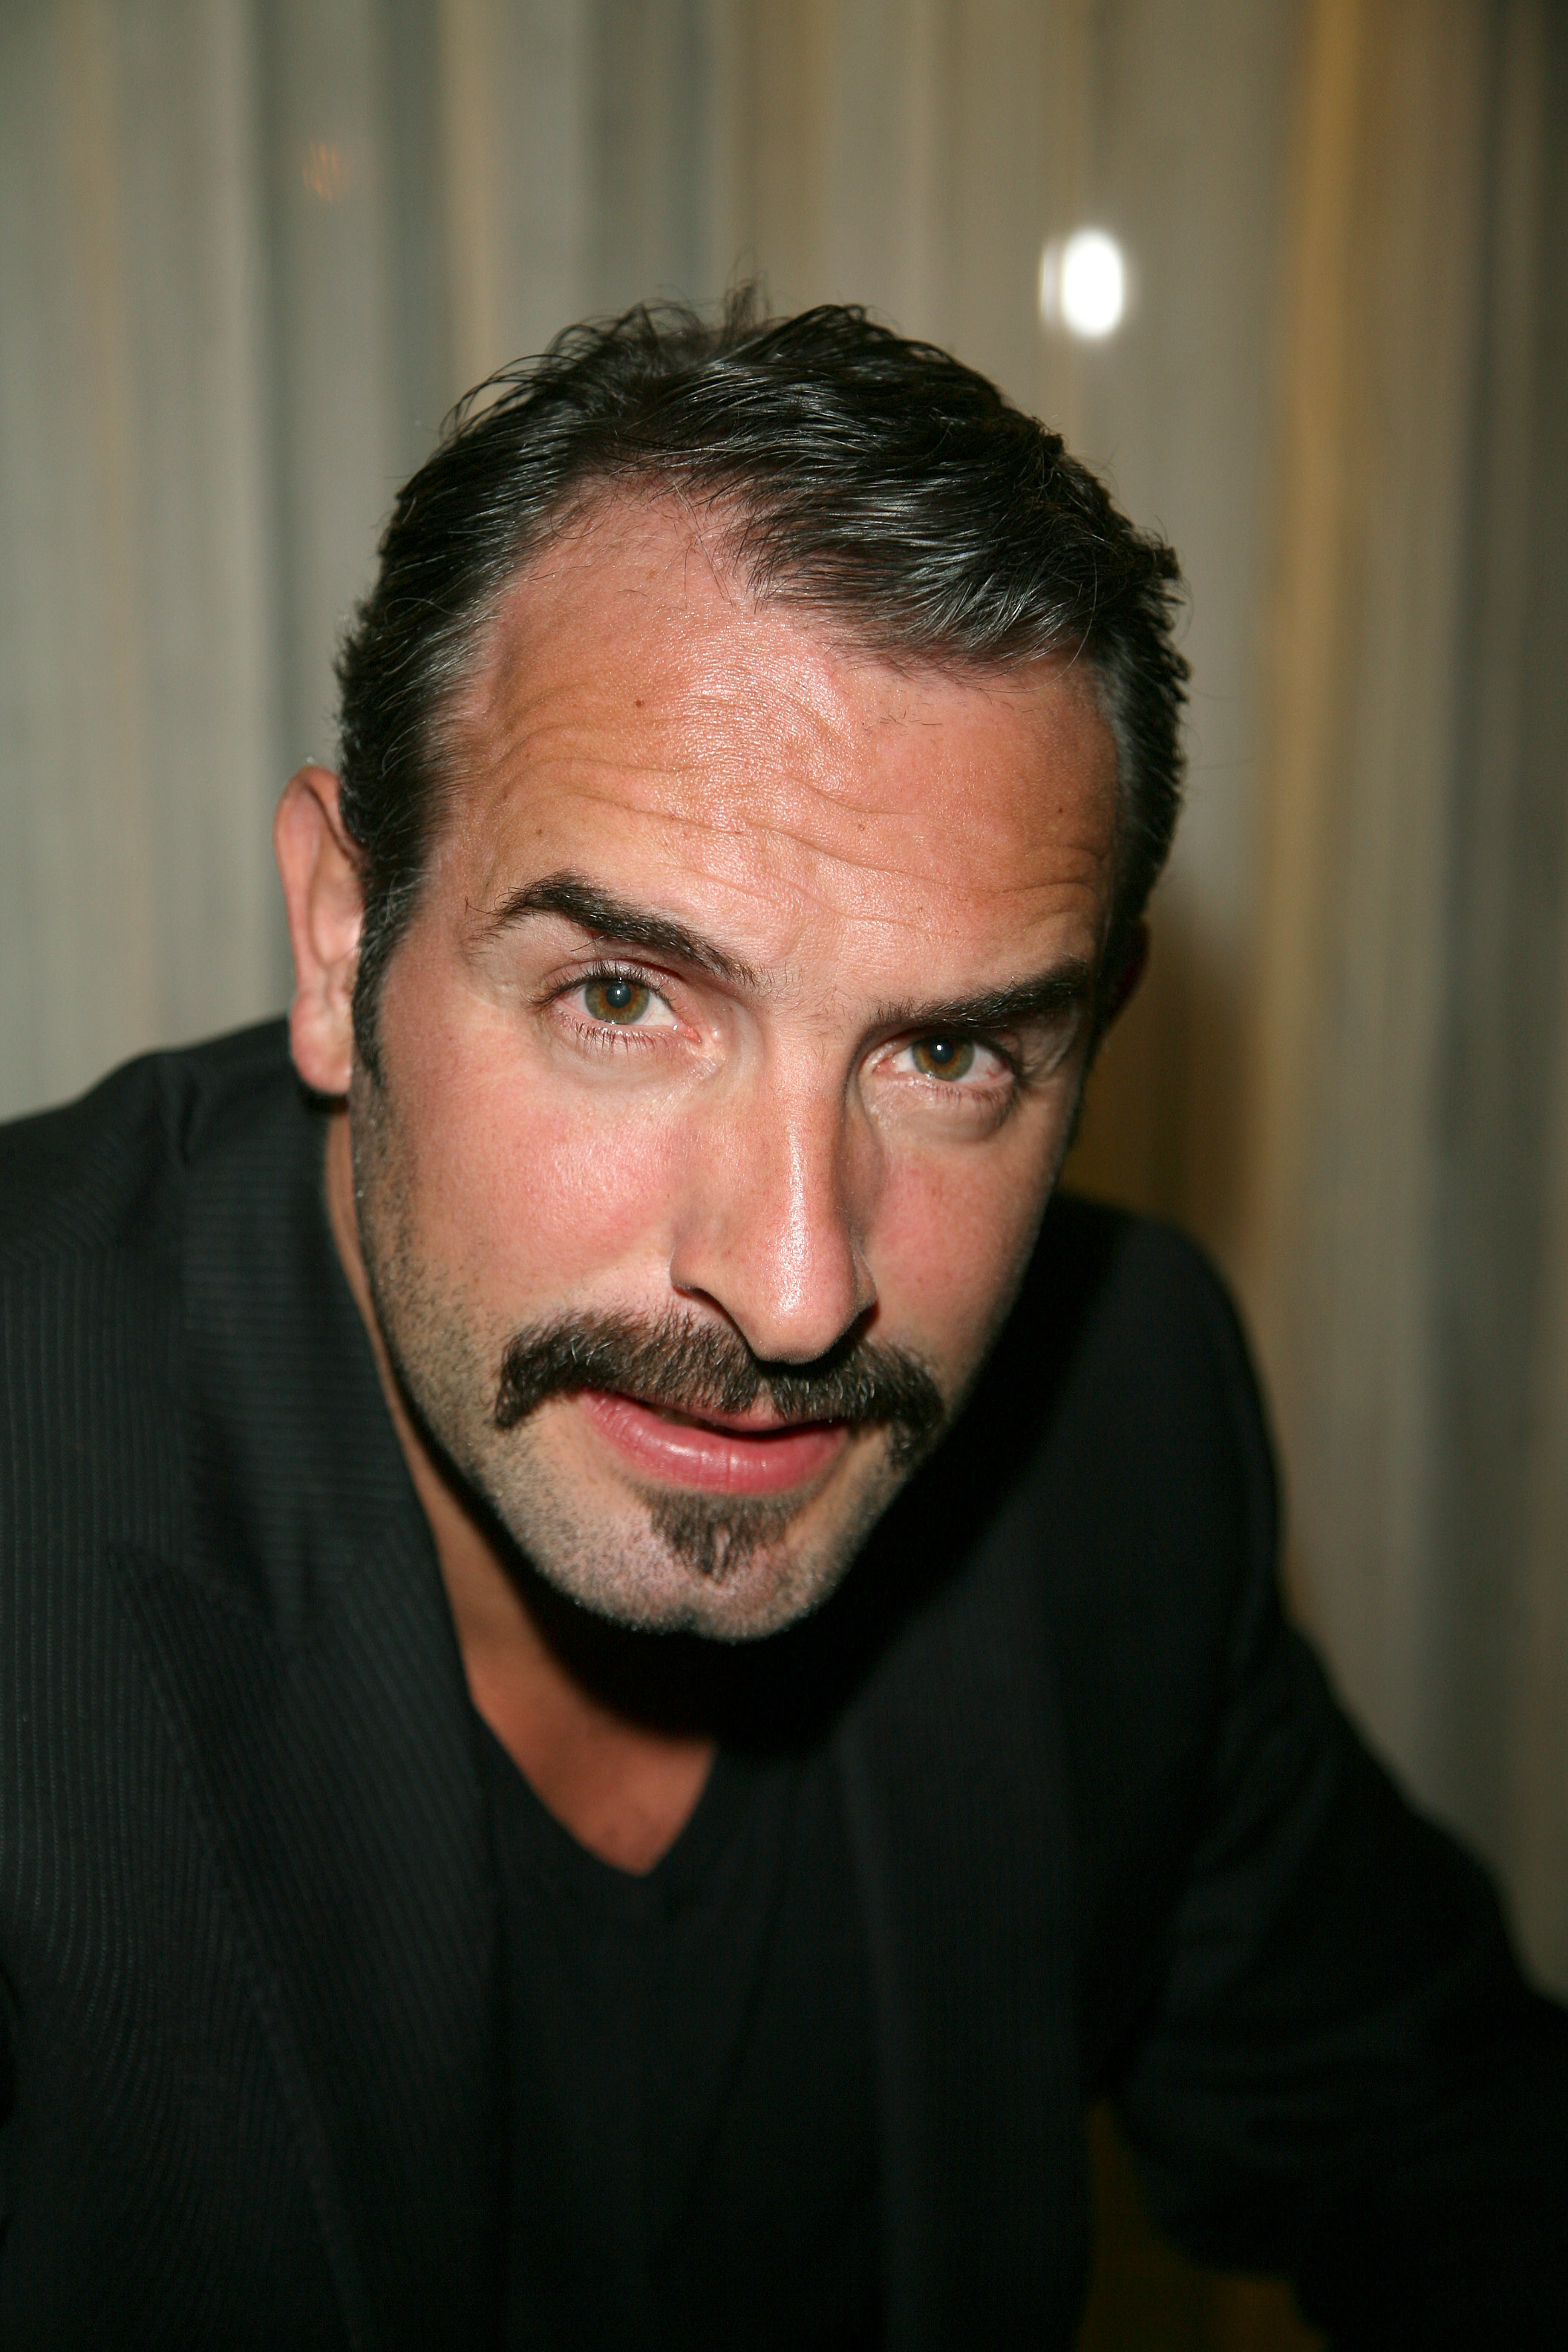 La moustache de Jean Dujardin - Hommes célèbres à moustache : qui sont les plus ...2112 x 3168